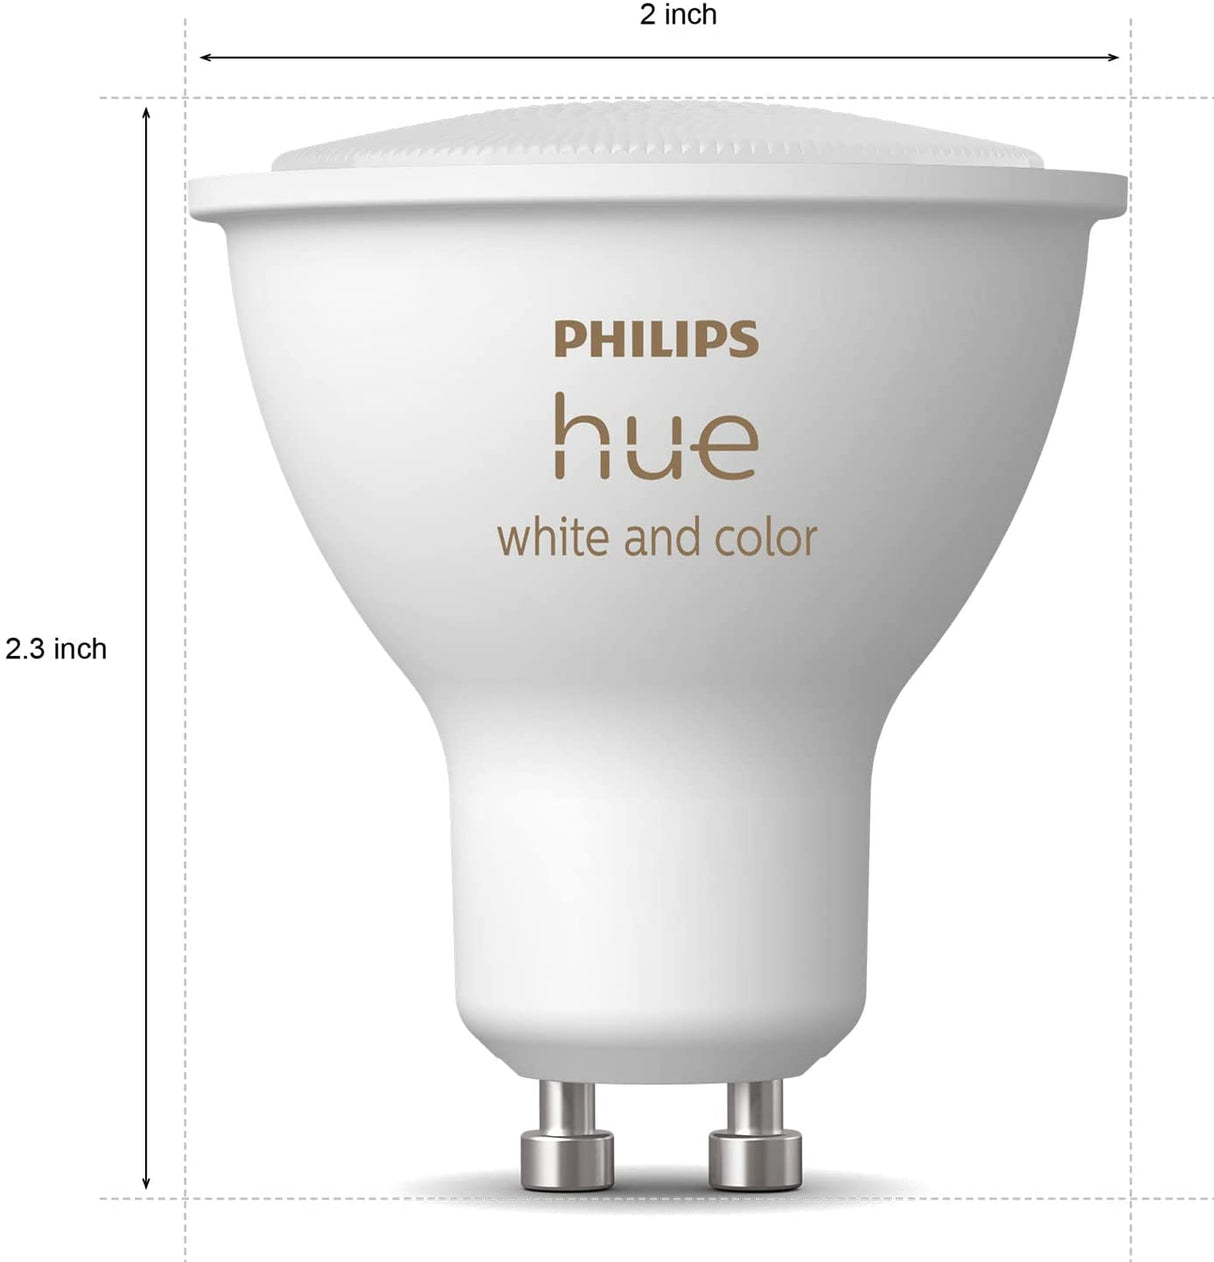 Philips Hue 542332 Bombilla inteligente Hue, 1 unidad (paquete de 1), ambiente blanco y de color - DIGVICE MX